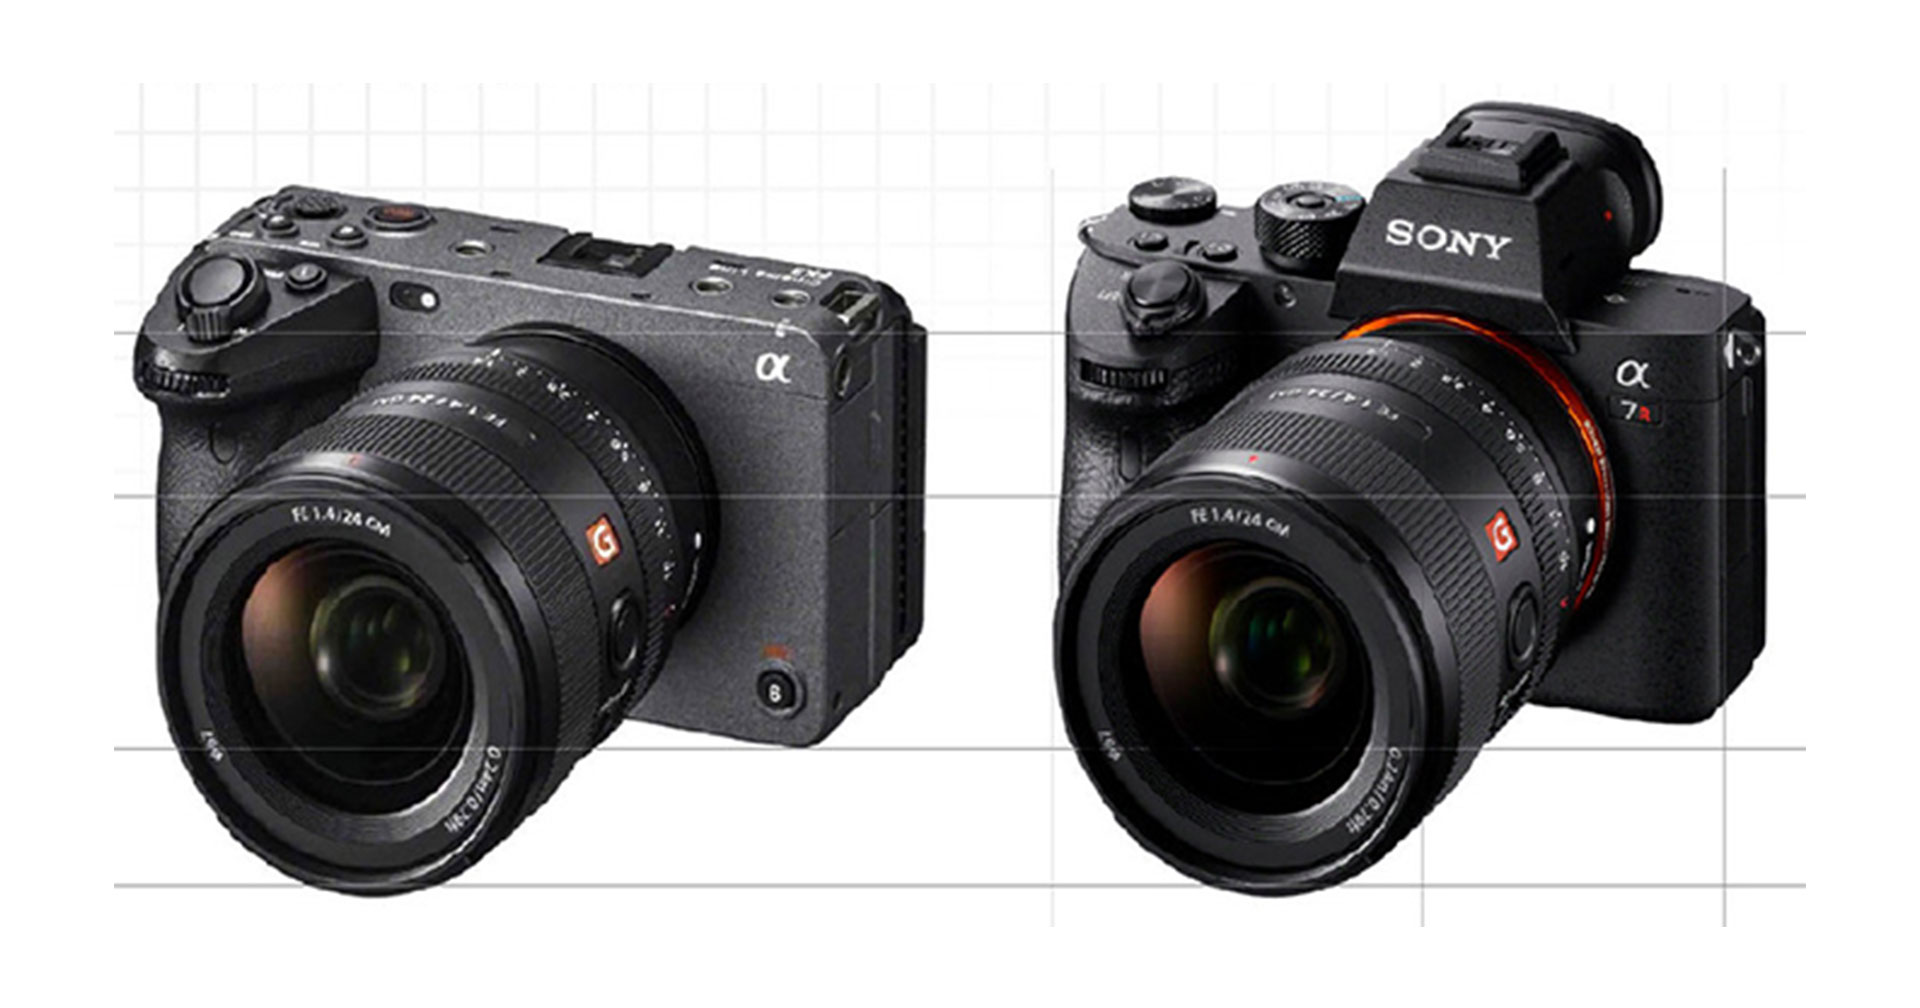 เทียบขนาด Sony FX3 กับ Sony A7 Series คาดมี Cine Colour profile แบบเดียวกับ A1